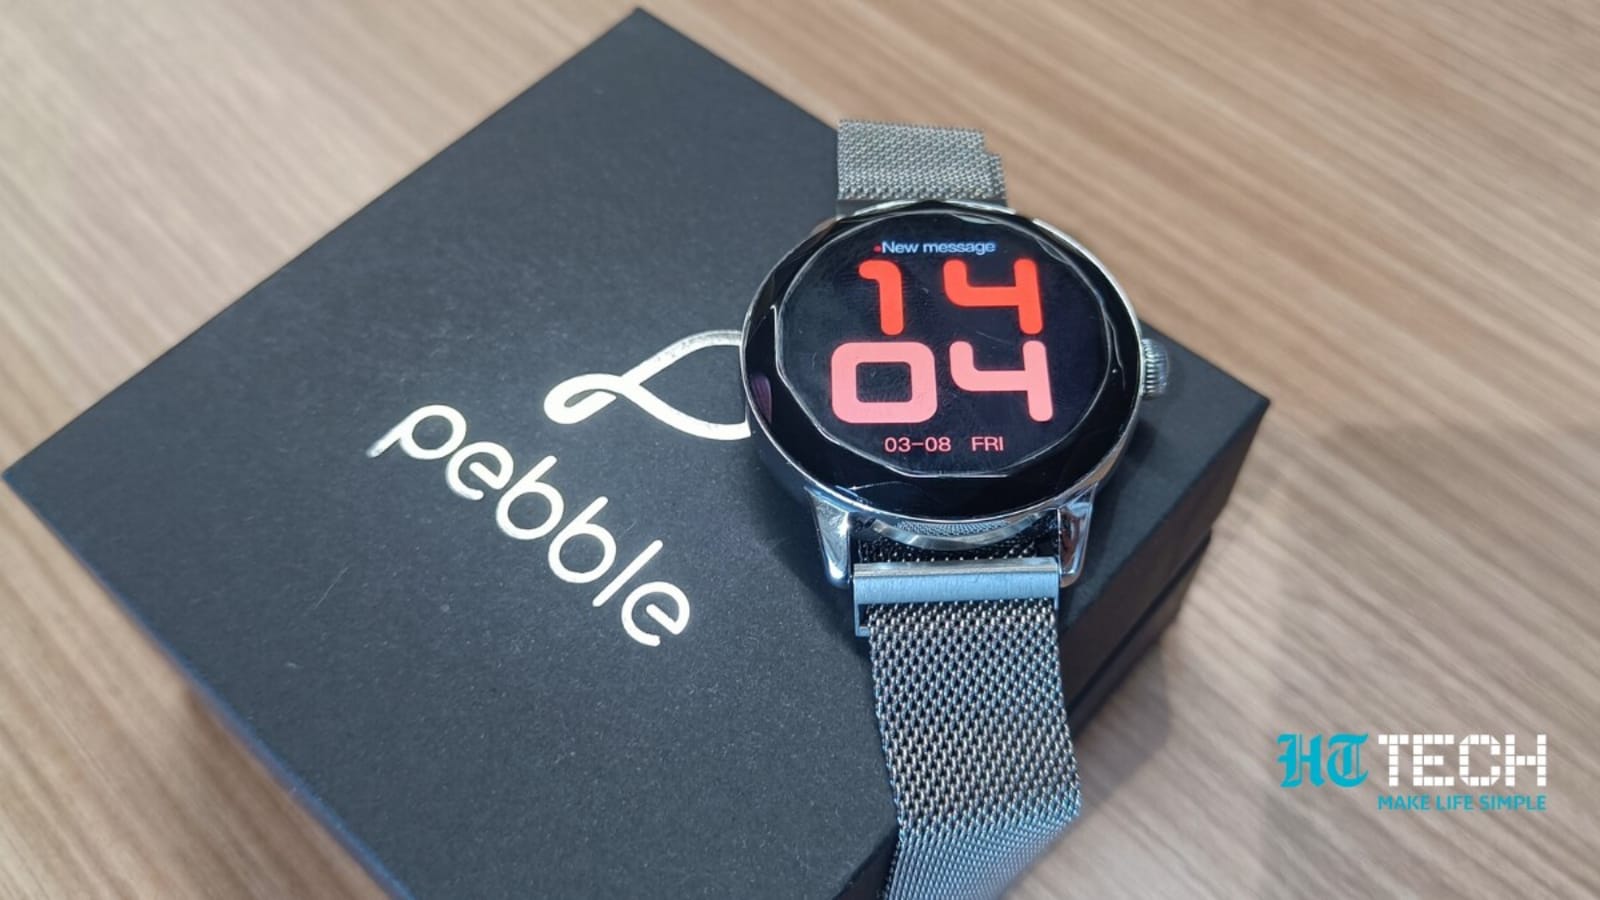 Revisión del reloj inteligente Pebble Vienna: un reloj económico con capacidades impresionantes